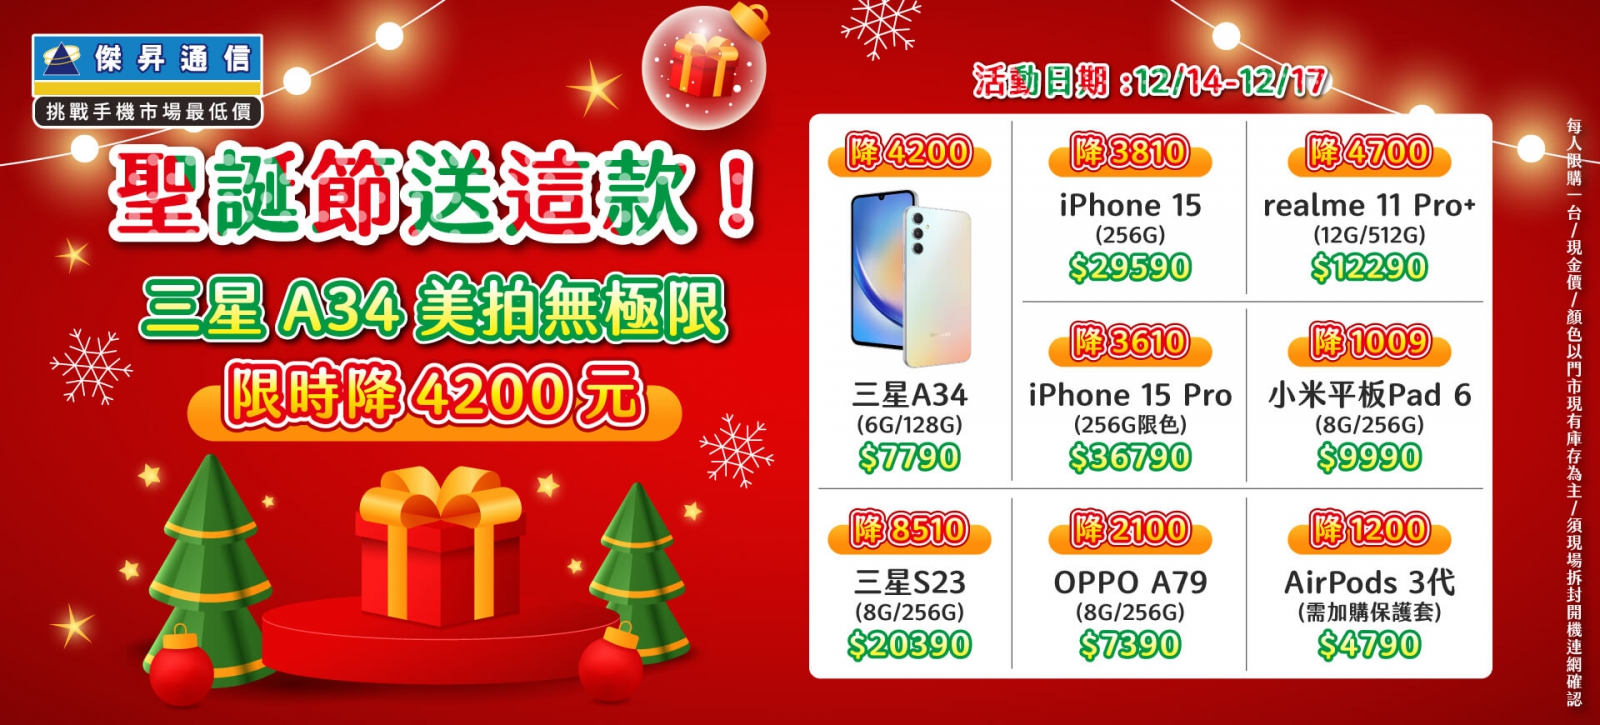 聖誕送夯機 iPhone 15大減價 三星A34限時降4千2